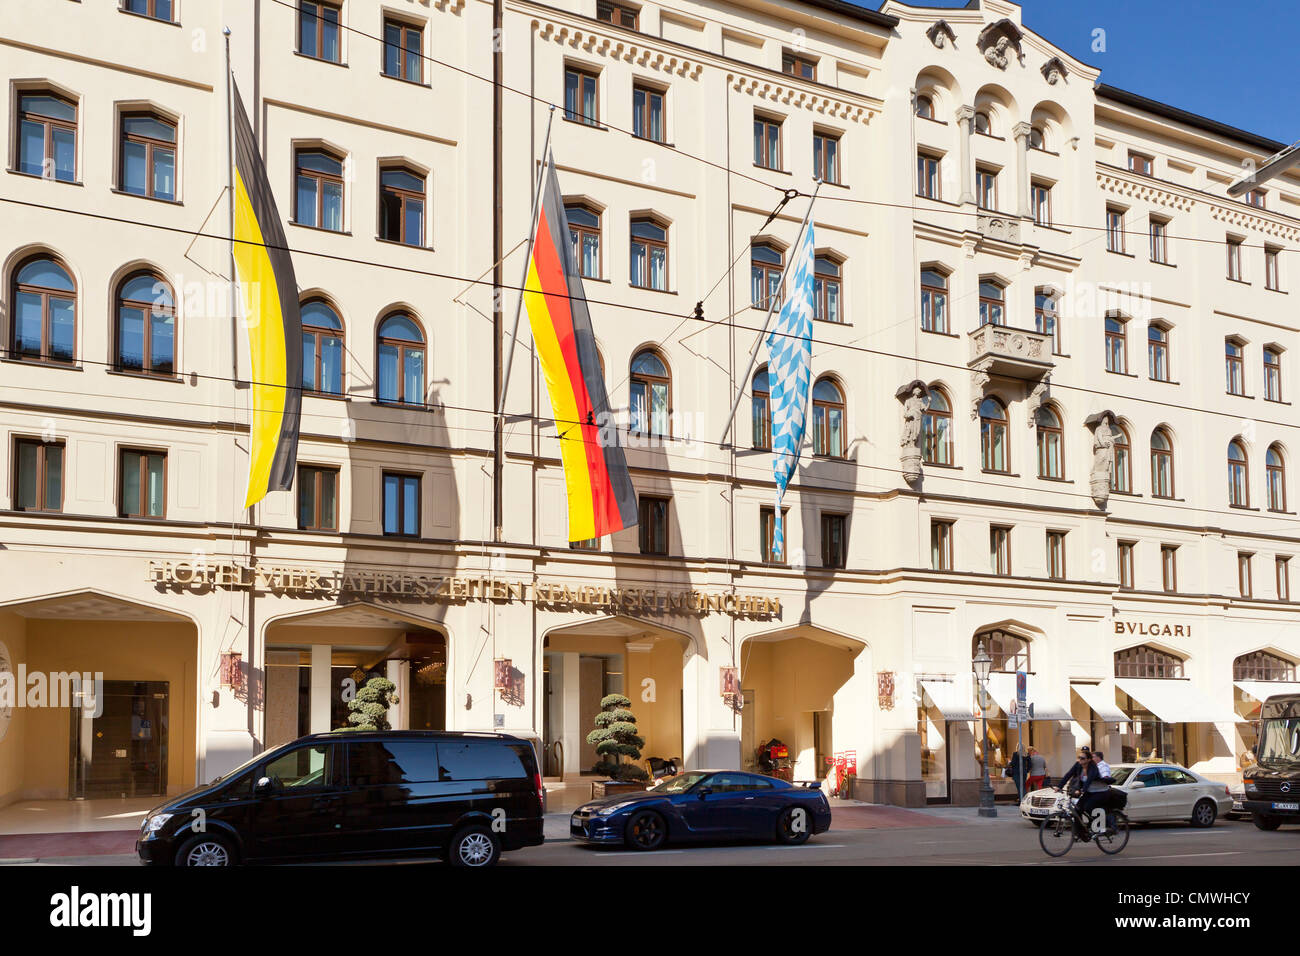 Hôtel Four Seasons (Vier Jahreszeiten Kempinski dans l/) Maximiliansstreet, Munich, Bavaria, Germany, Europe Banque D'Images